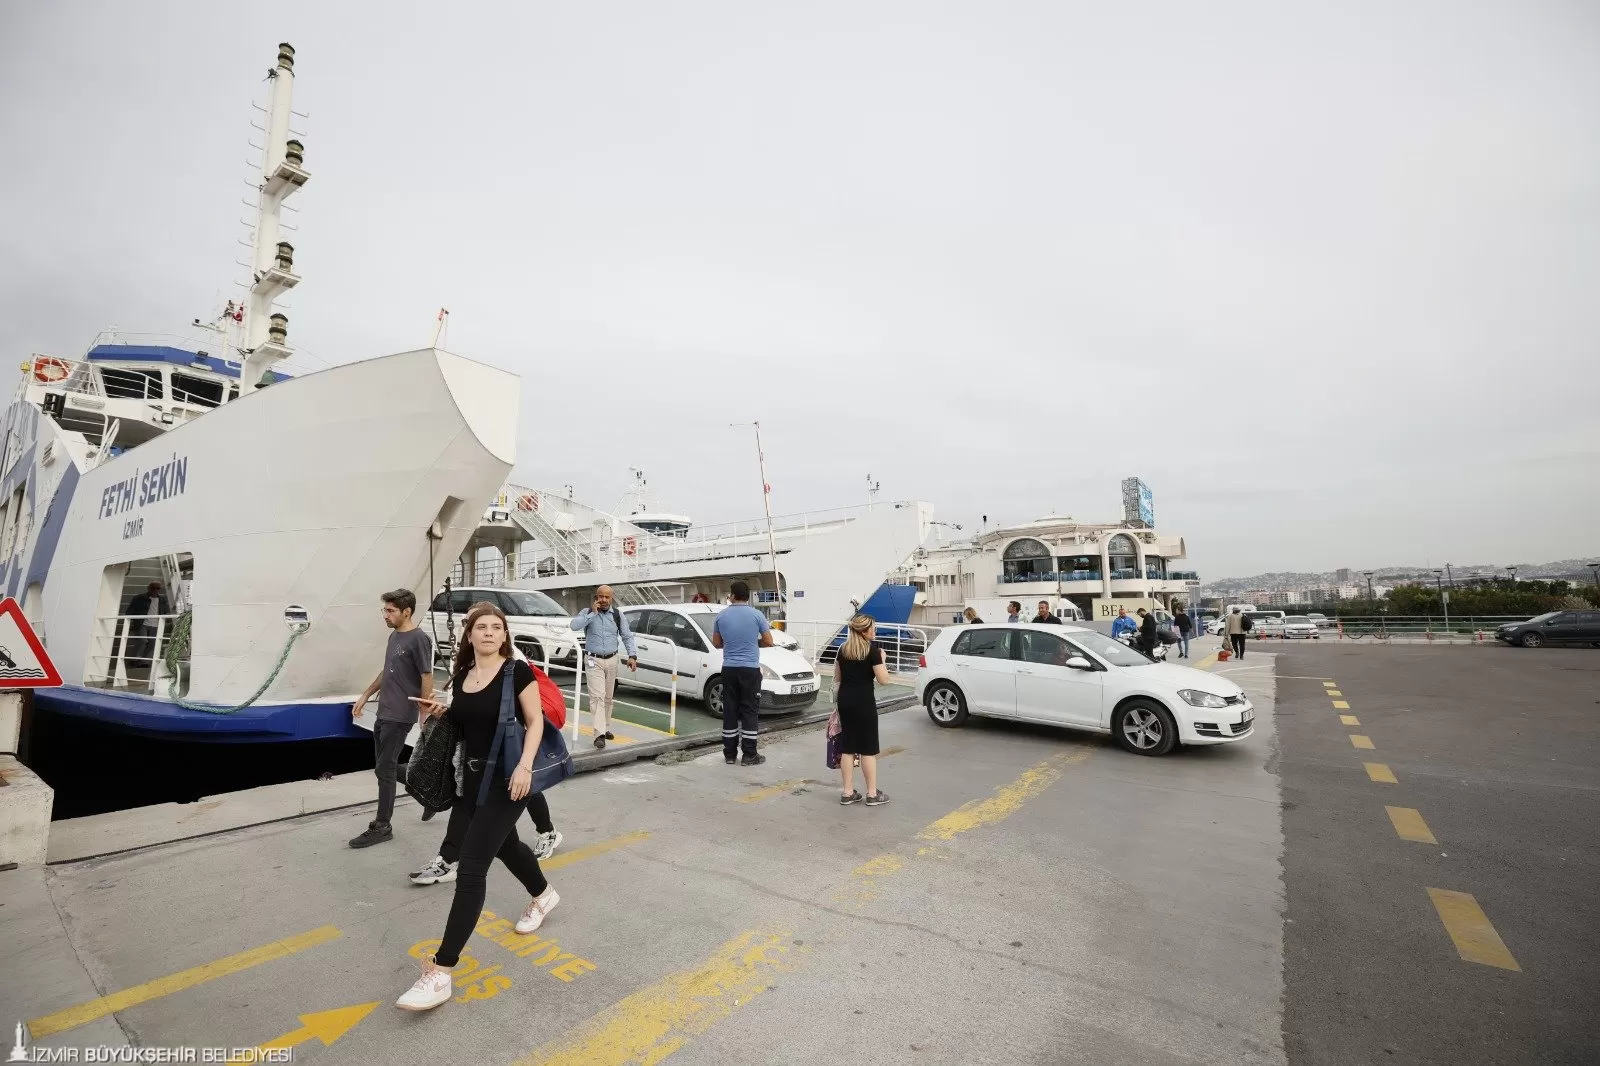 İzmir Büyükşehir Belediyesi'nin deniz ulaşımına yaptığı yatırımlar sayesinde, kentte deniz ulaşımına olan talep arttı. 2019 yılından bu yana 5 milyon 717 bin araç deniz yoluyla taşındı. 